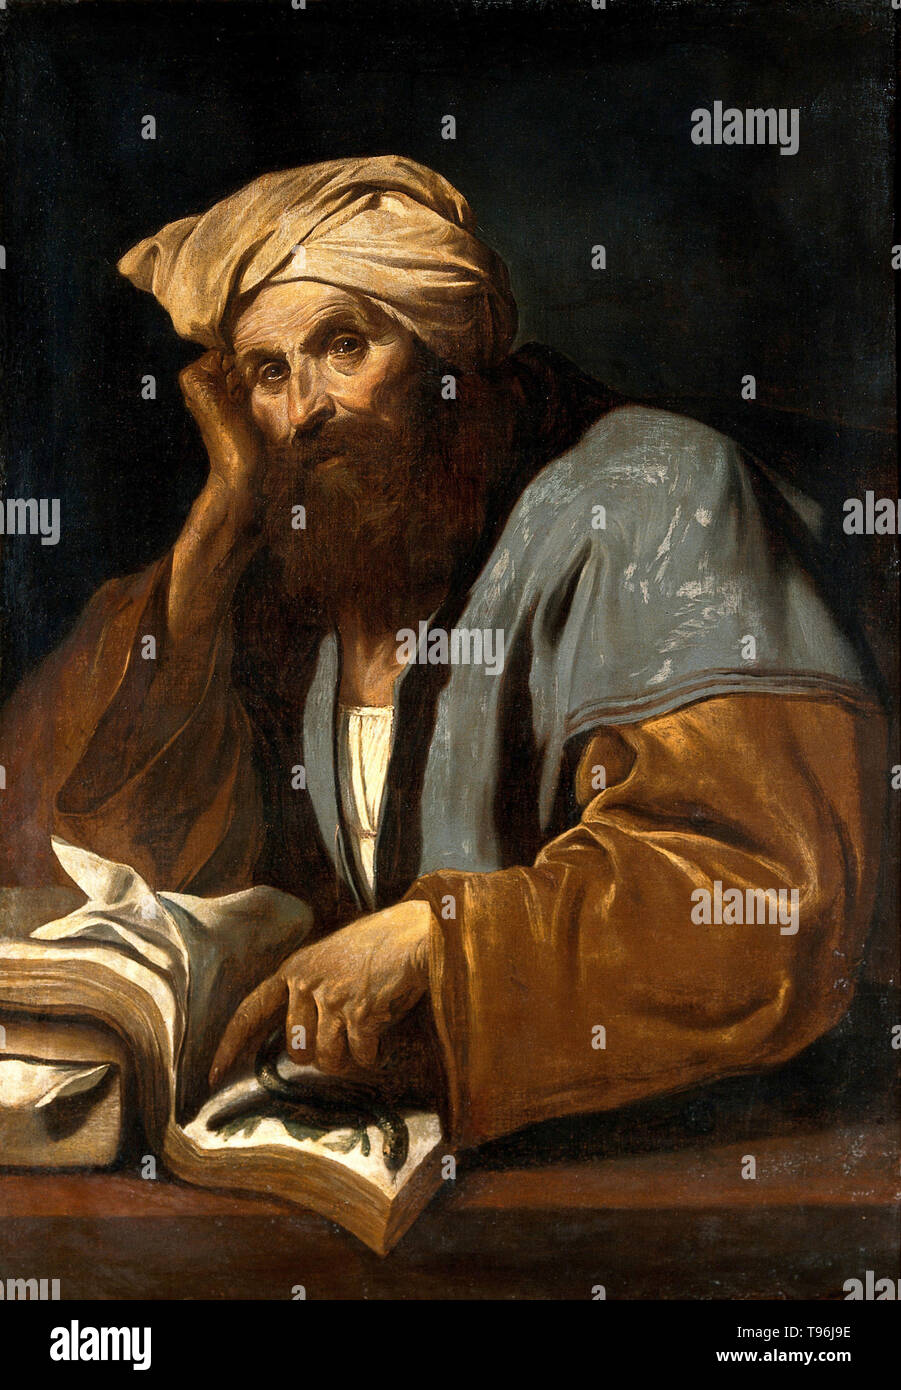 Abu 'Ali al-Husayn Ibn Abd Allah ibn Sina (980-1037), comunemente noto come Ibn Sina o dal suo nome latinizzato Avicenna, era un polymath persiano, che ha scritto quasi 450 trattati su una vasta gamma di soggetti, di cui circa 240 sono sopravvissuti. Le sue opere più famose sono il libro di guarigione, un vasto filosofiche e scientifiche enciclopedia, e il canone della medicina, che era uno standard medico testo in molte università medievali. Foto Stock